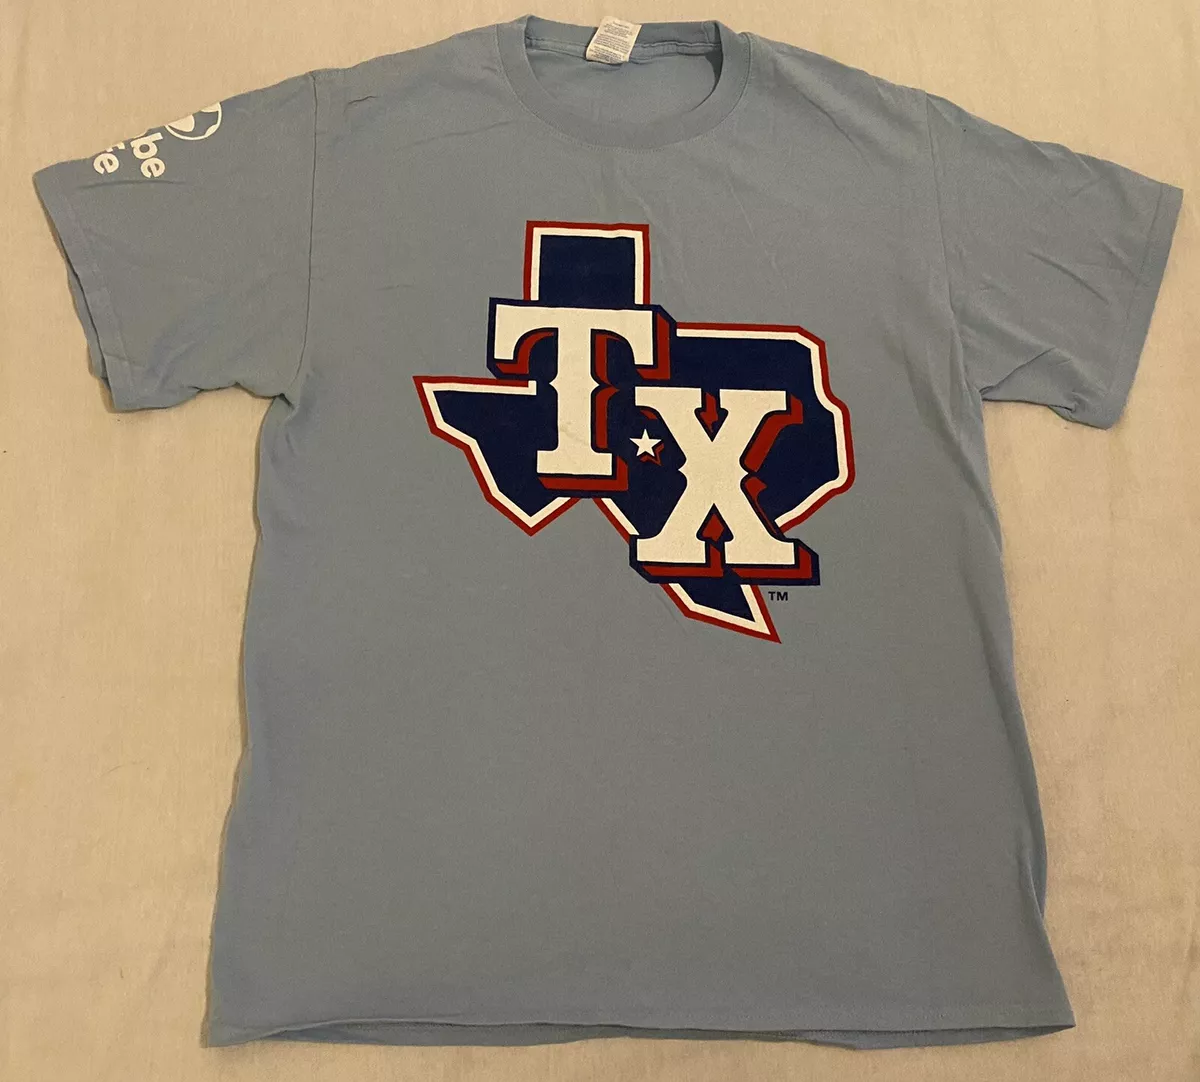 texas rangers light blue shirt